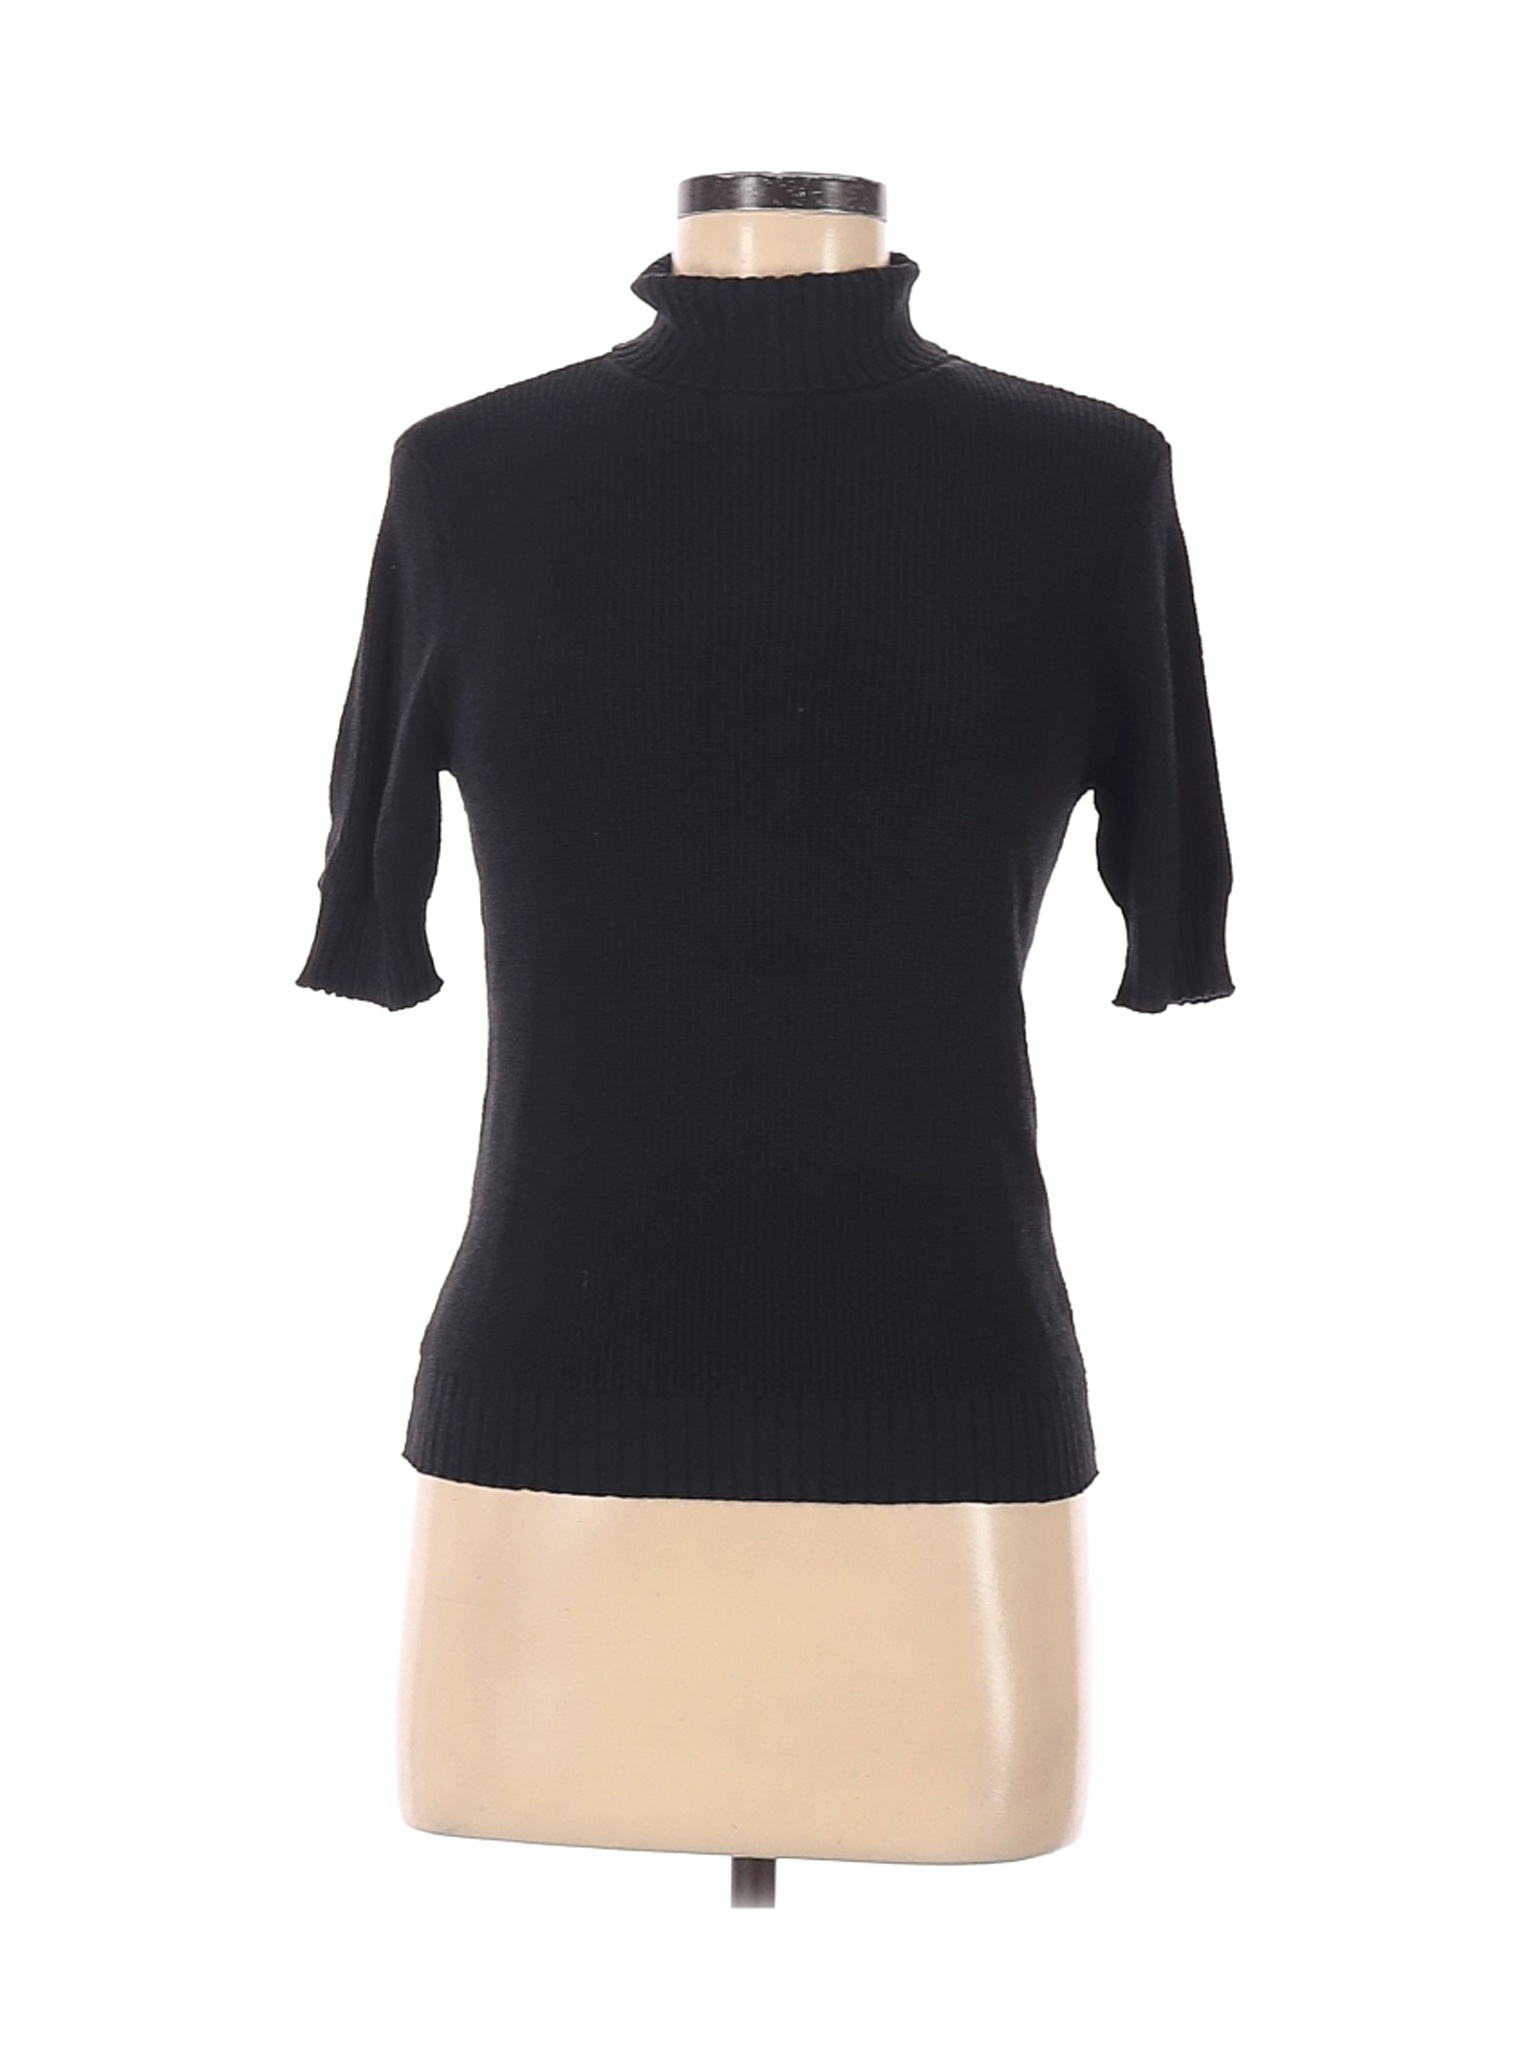 Liz Claiborne Women Black Silk Pullover Sweater M | eBay